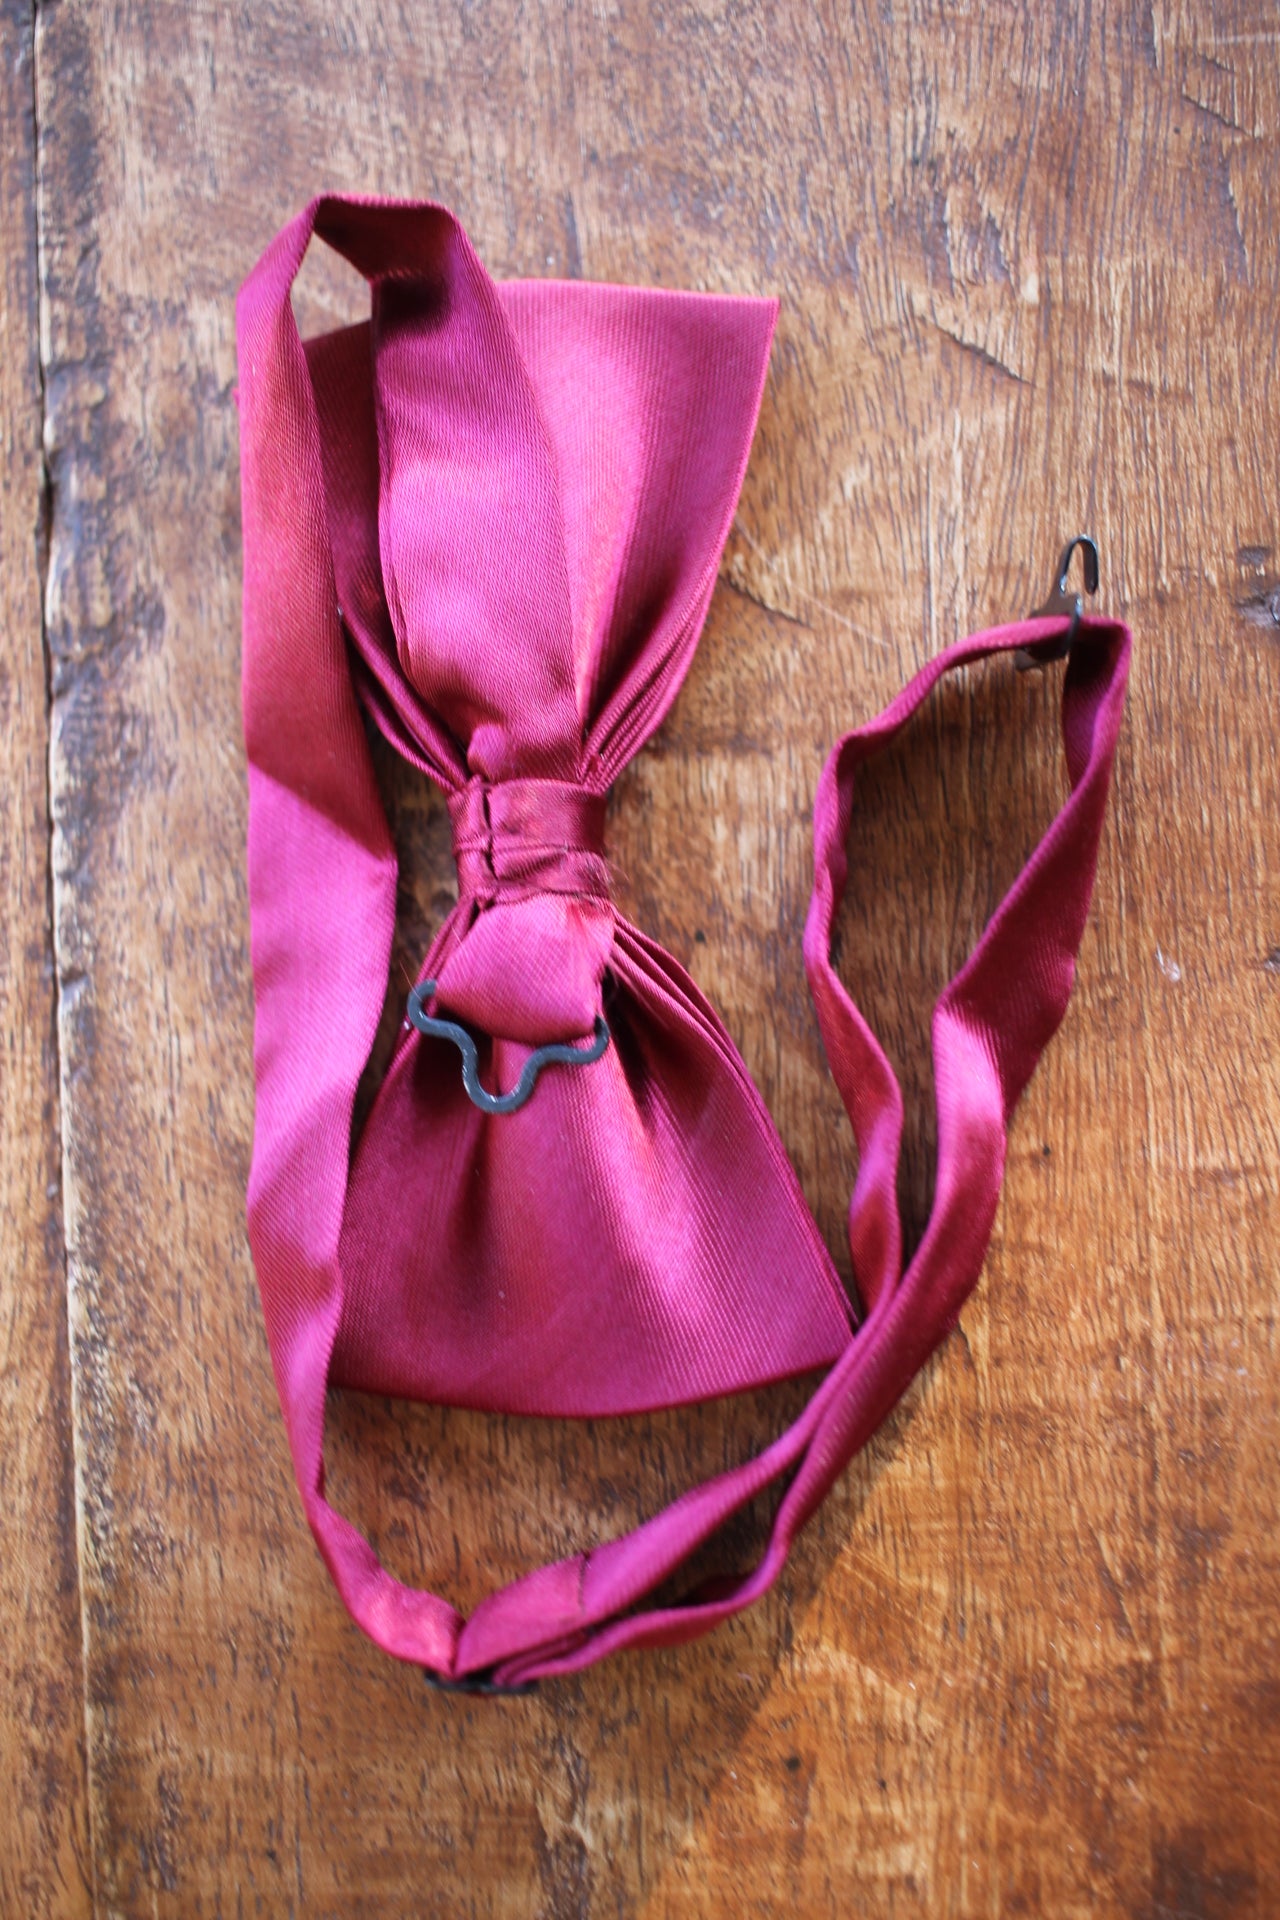 Vintage pre-tied deep red bow tie adjustable still in box